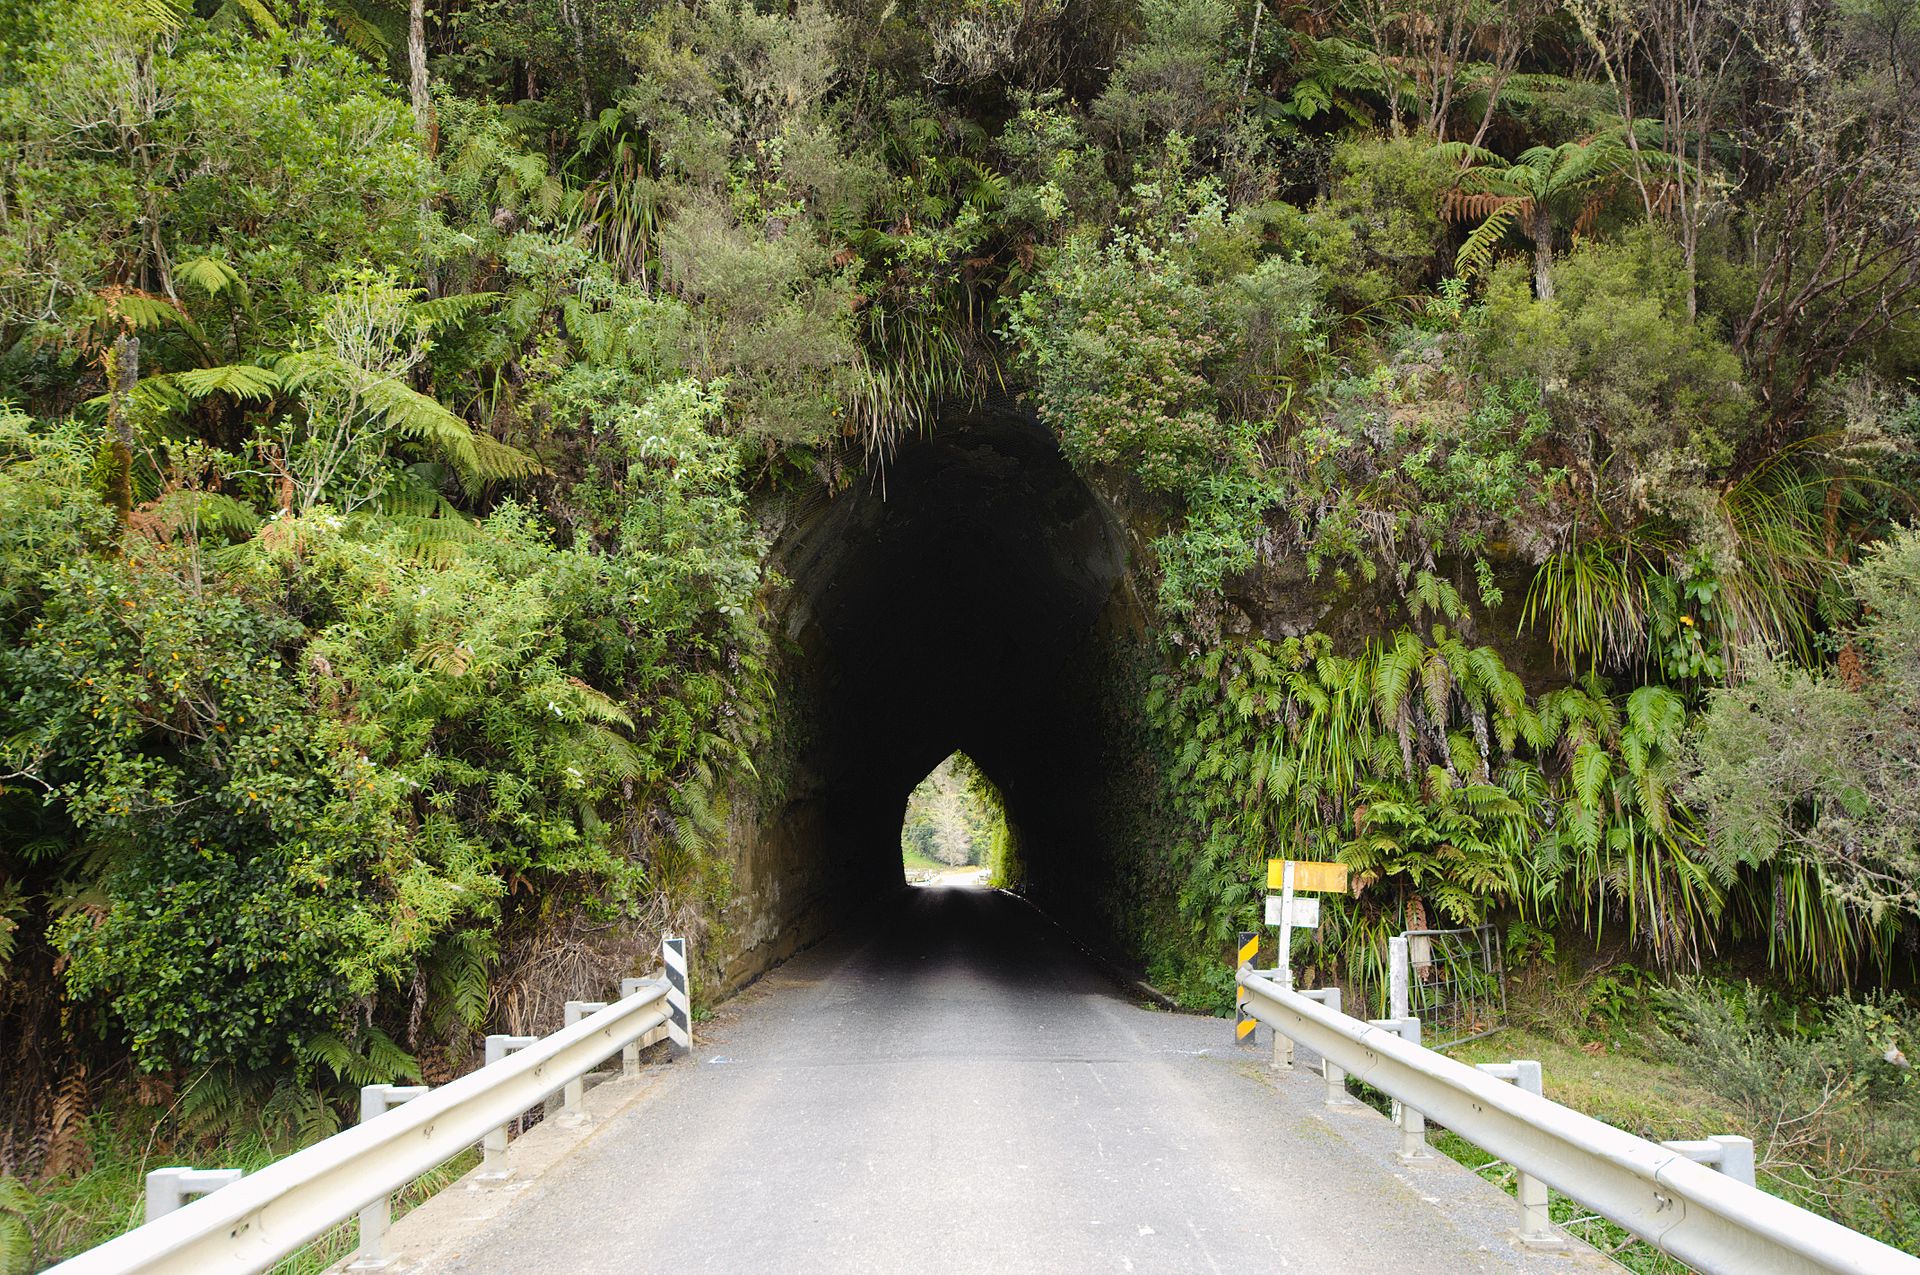 http://en.wikipedia.org/wiki/List_of_tunnels_in_New_Zealand#mediaviewer/File:Okau_Road_tunnel.jpg